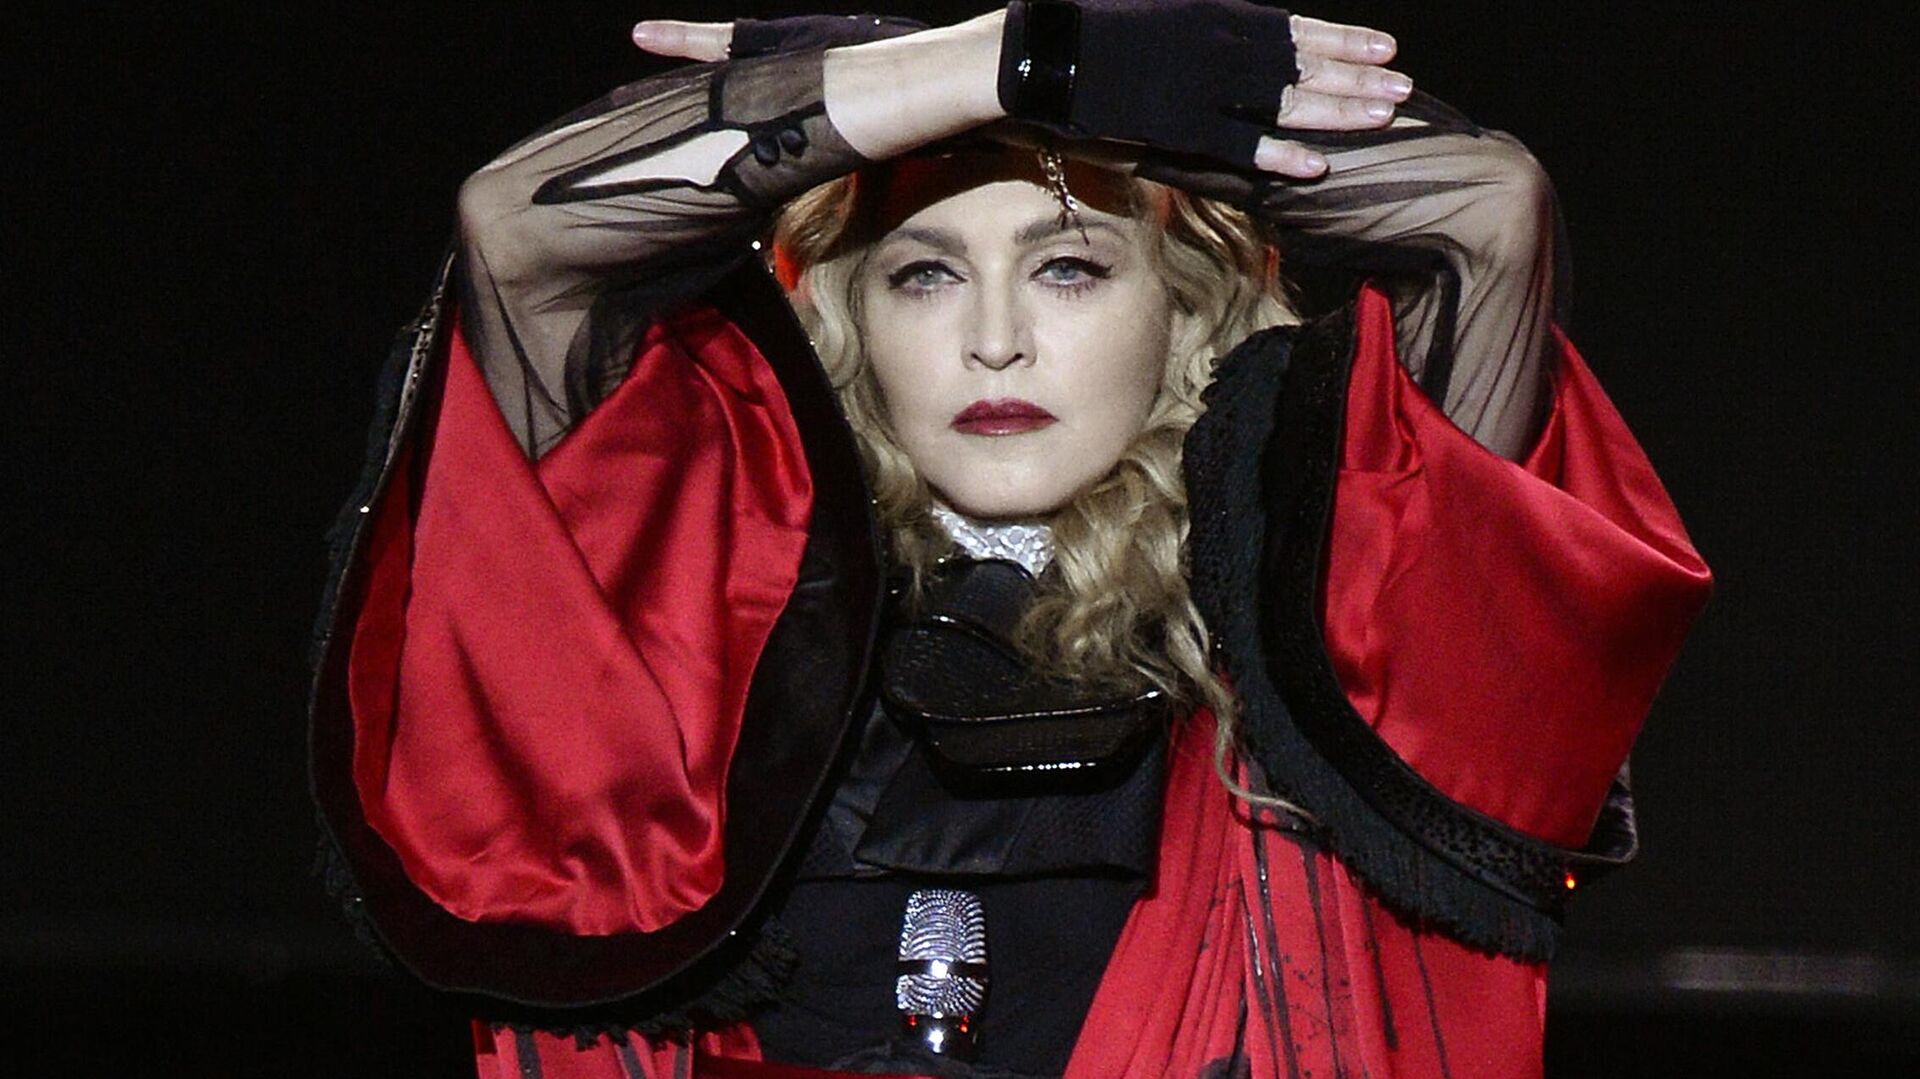 Madonna dan şok görüntüler! Üstsüz dansçıyı dudağından öptü